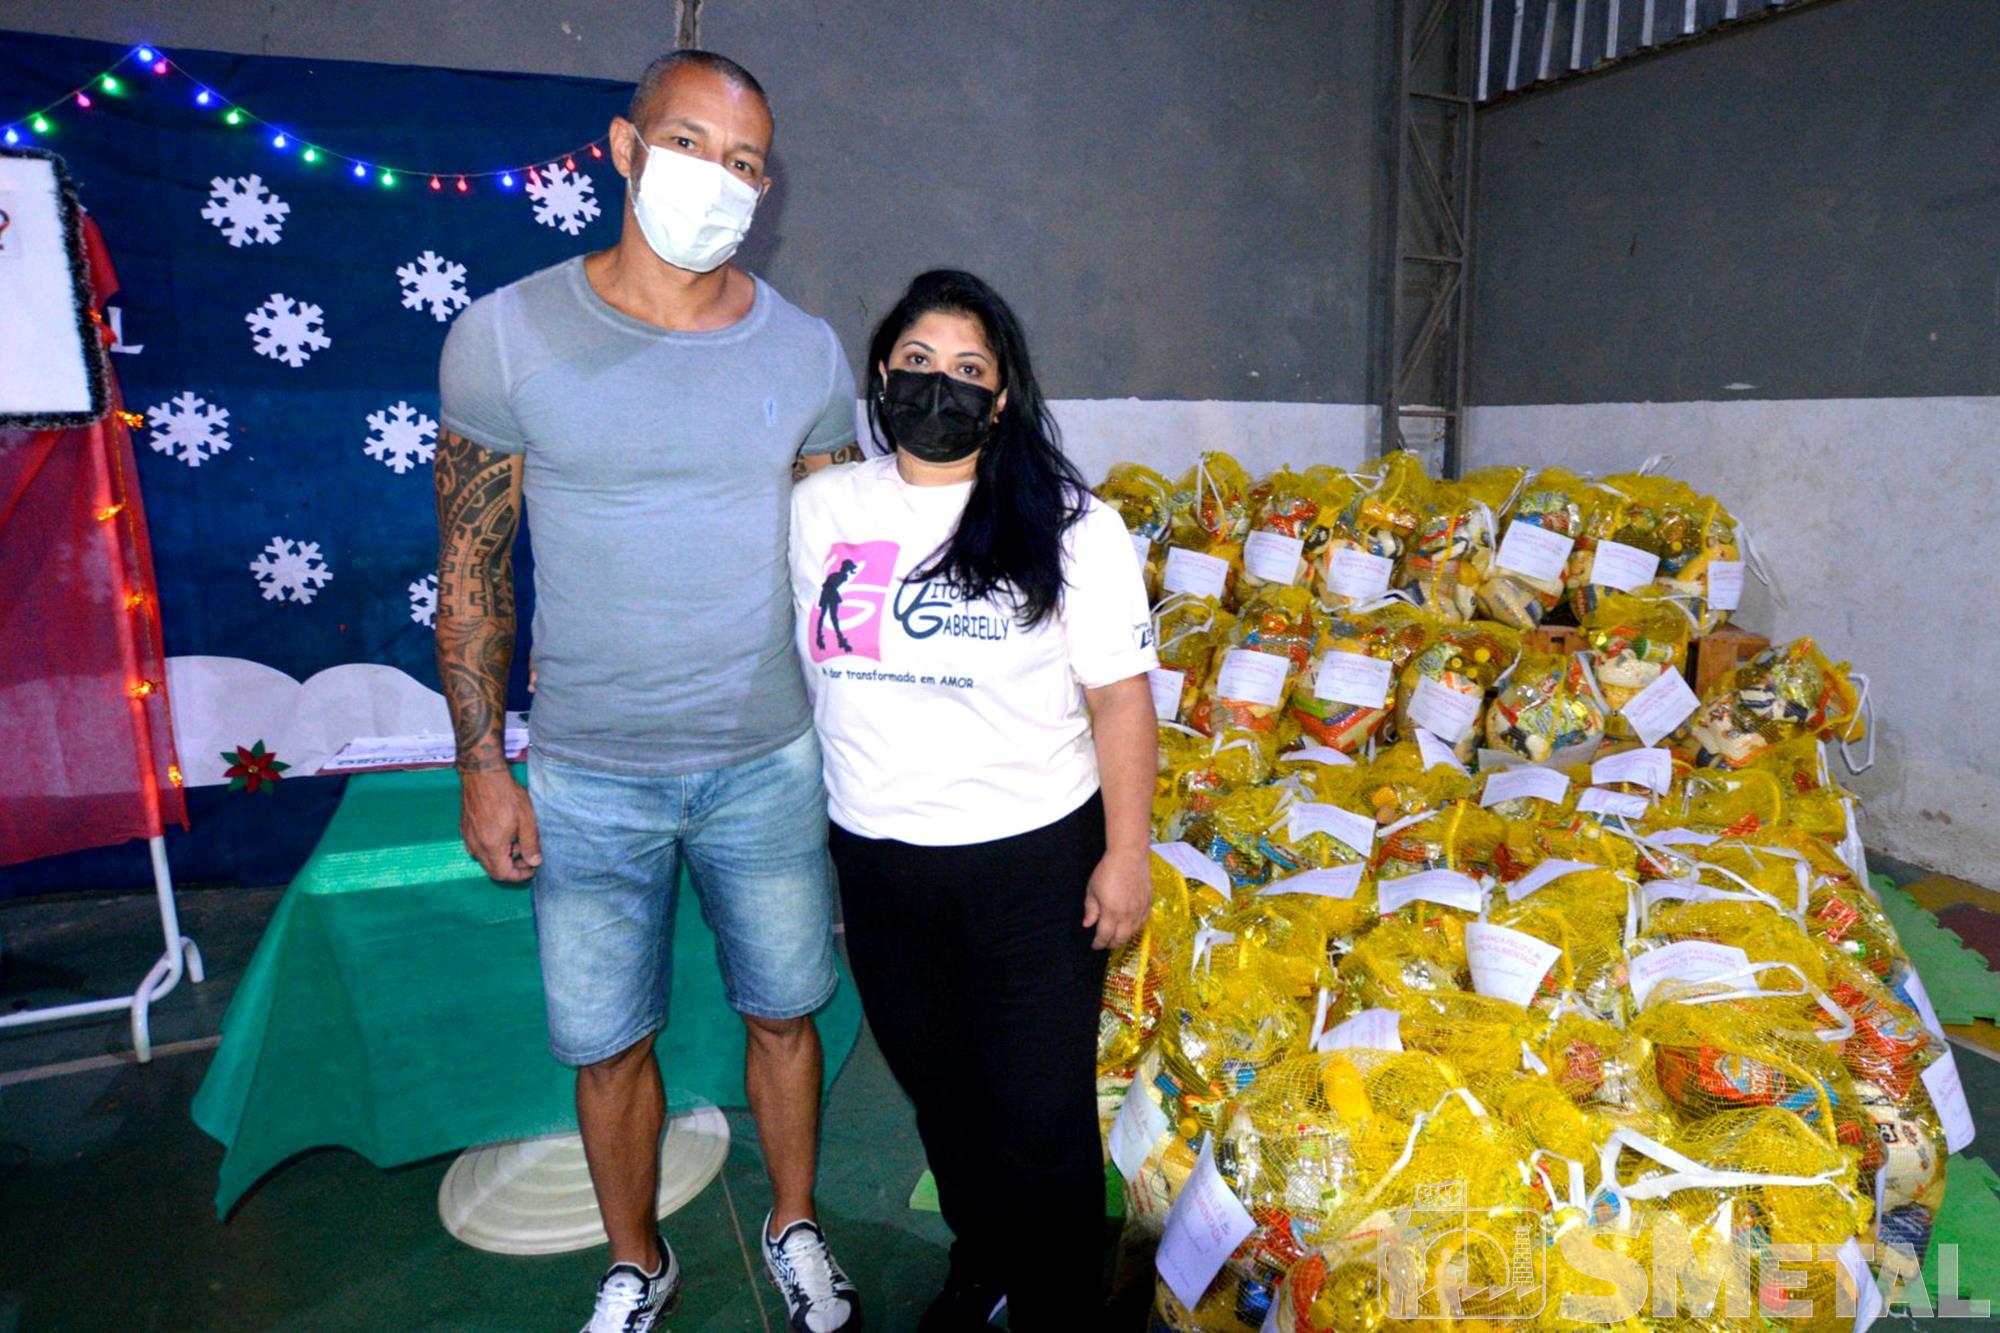 Foguinho/Imprensa SMetal , #TBT Natal sem Fome doou 2, 1 mil cesta para comunidades e entidades; fotos